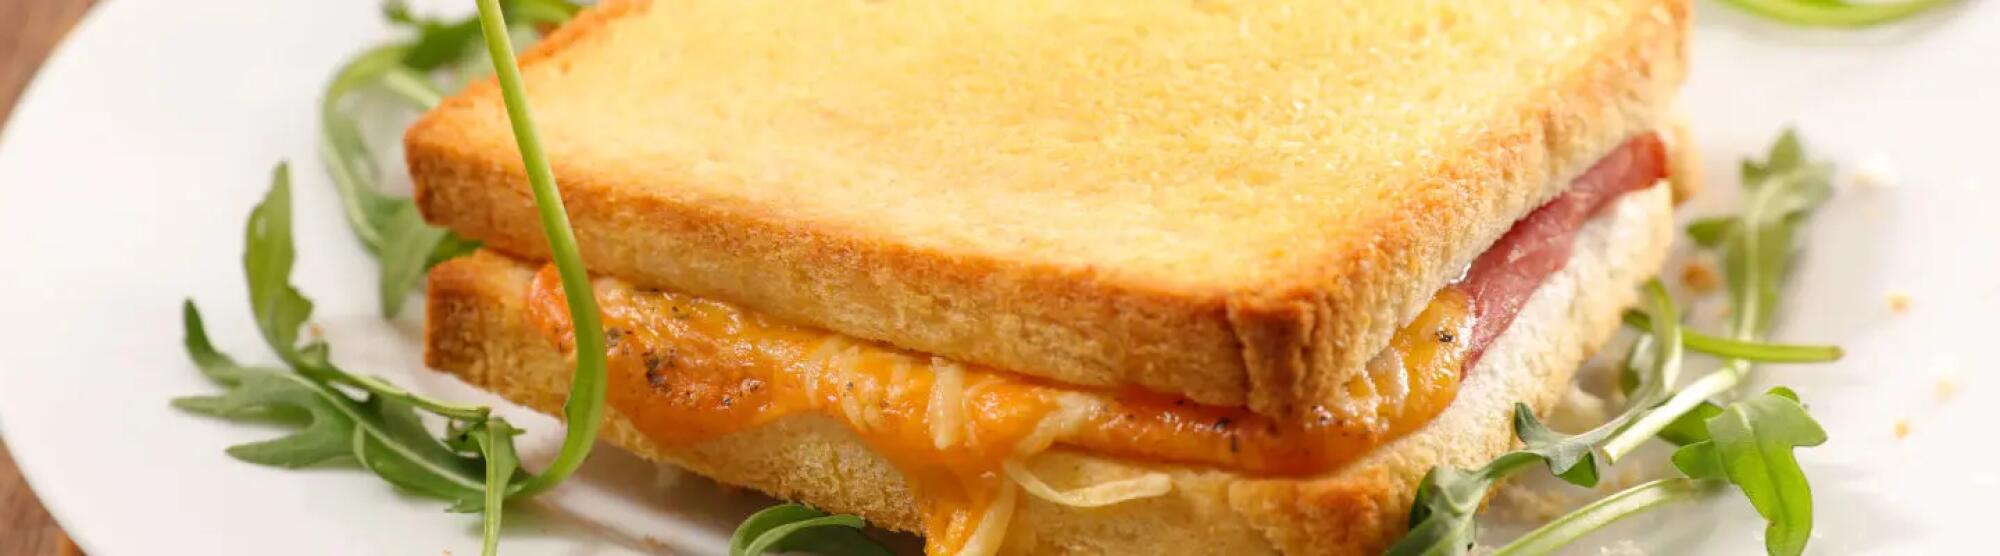 Recette : Croque basque au lomo, piment d'espelette et fromage